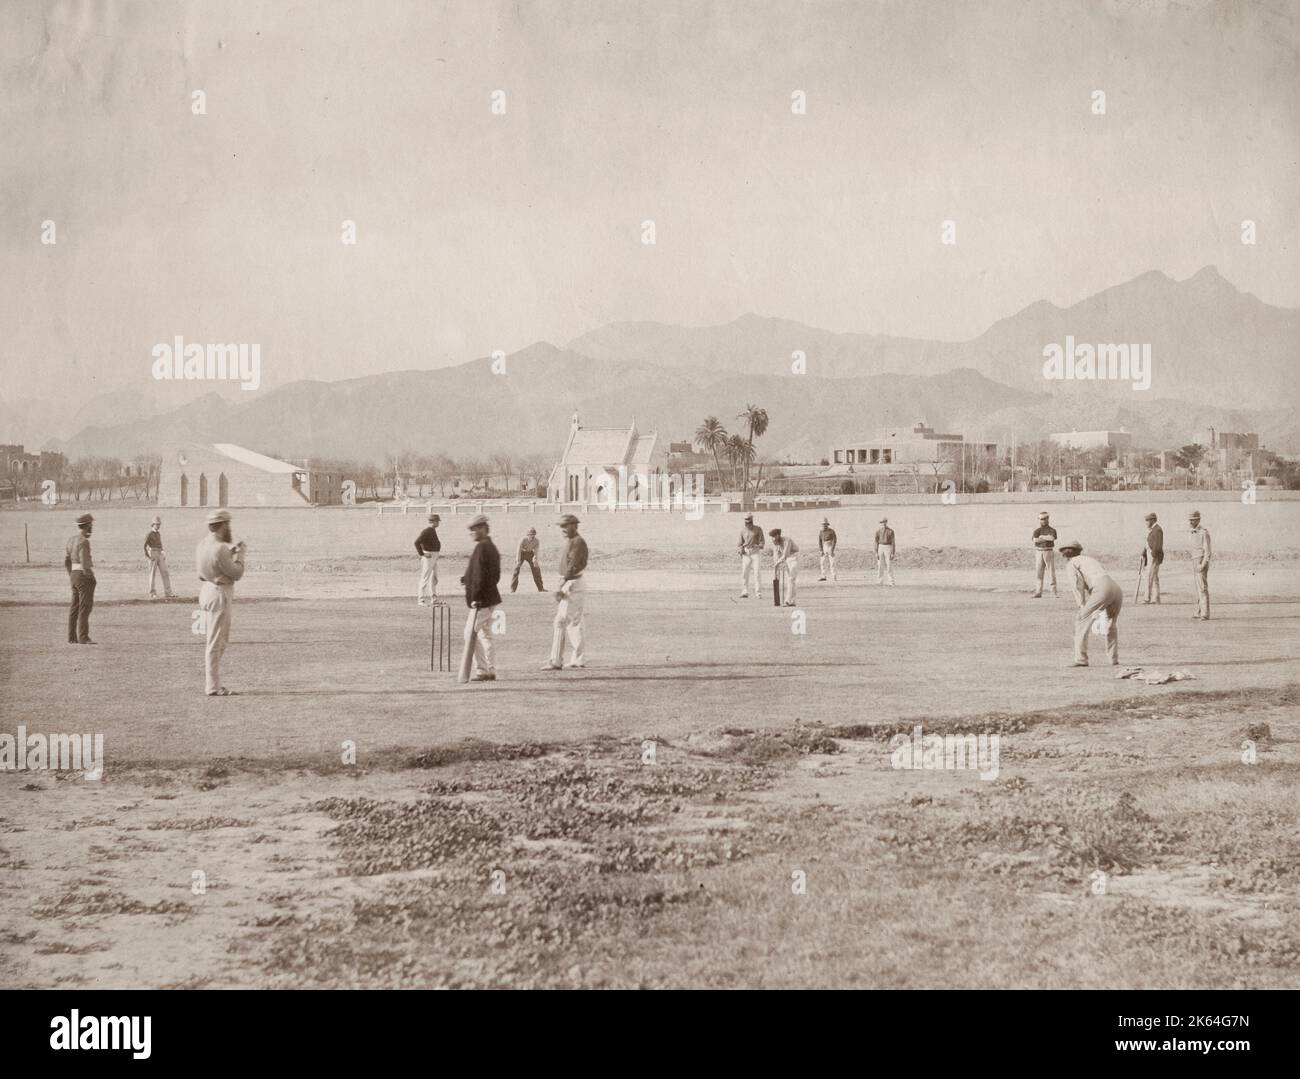 Fotografía del siglo XIX: Imagen importante en términos de la historia del cricket en la India - tomada c.1862-65 esta es una de las primeras imágenes del juego que se juega en el país. Los jugadores son oficiales del ejército británico. Cricket en India, Kohat, 1860. Foto de stock